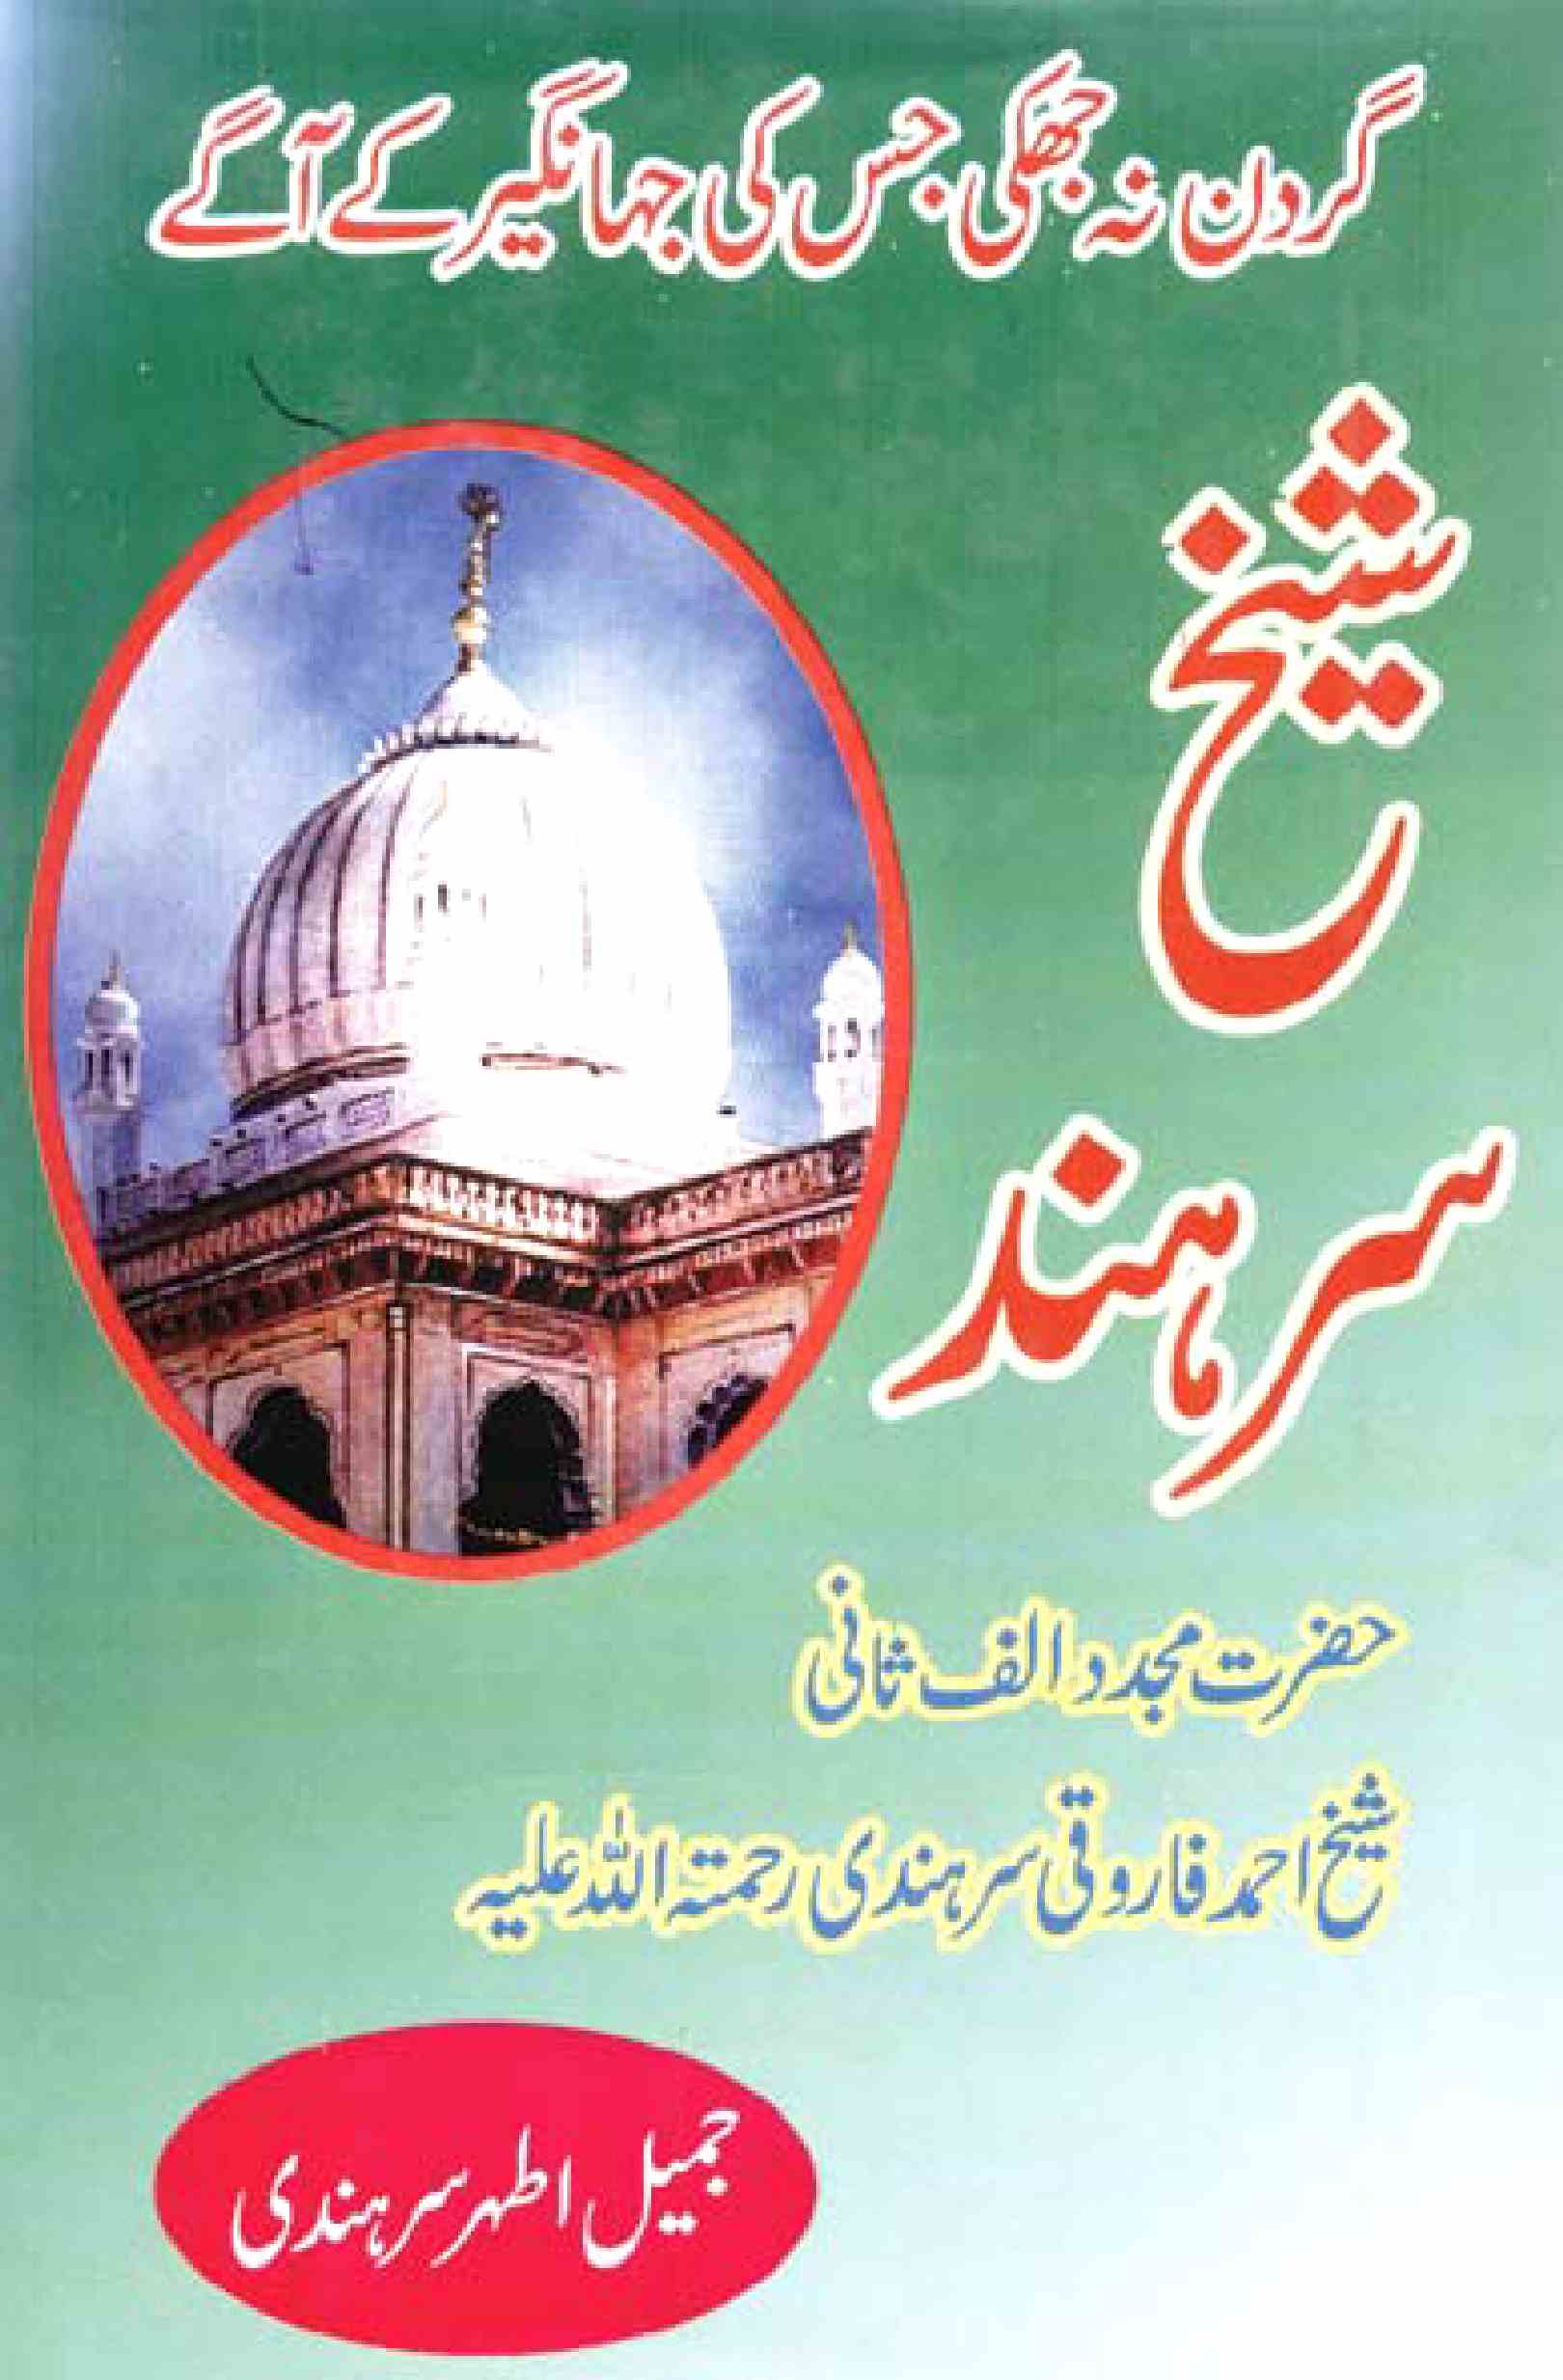 Shaikh-e-Sar-Hind